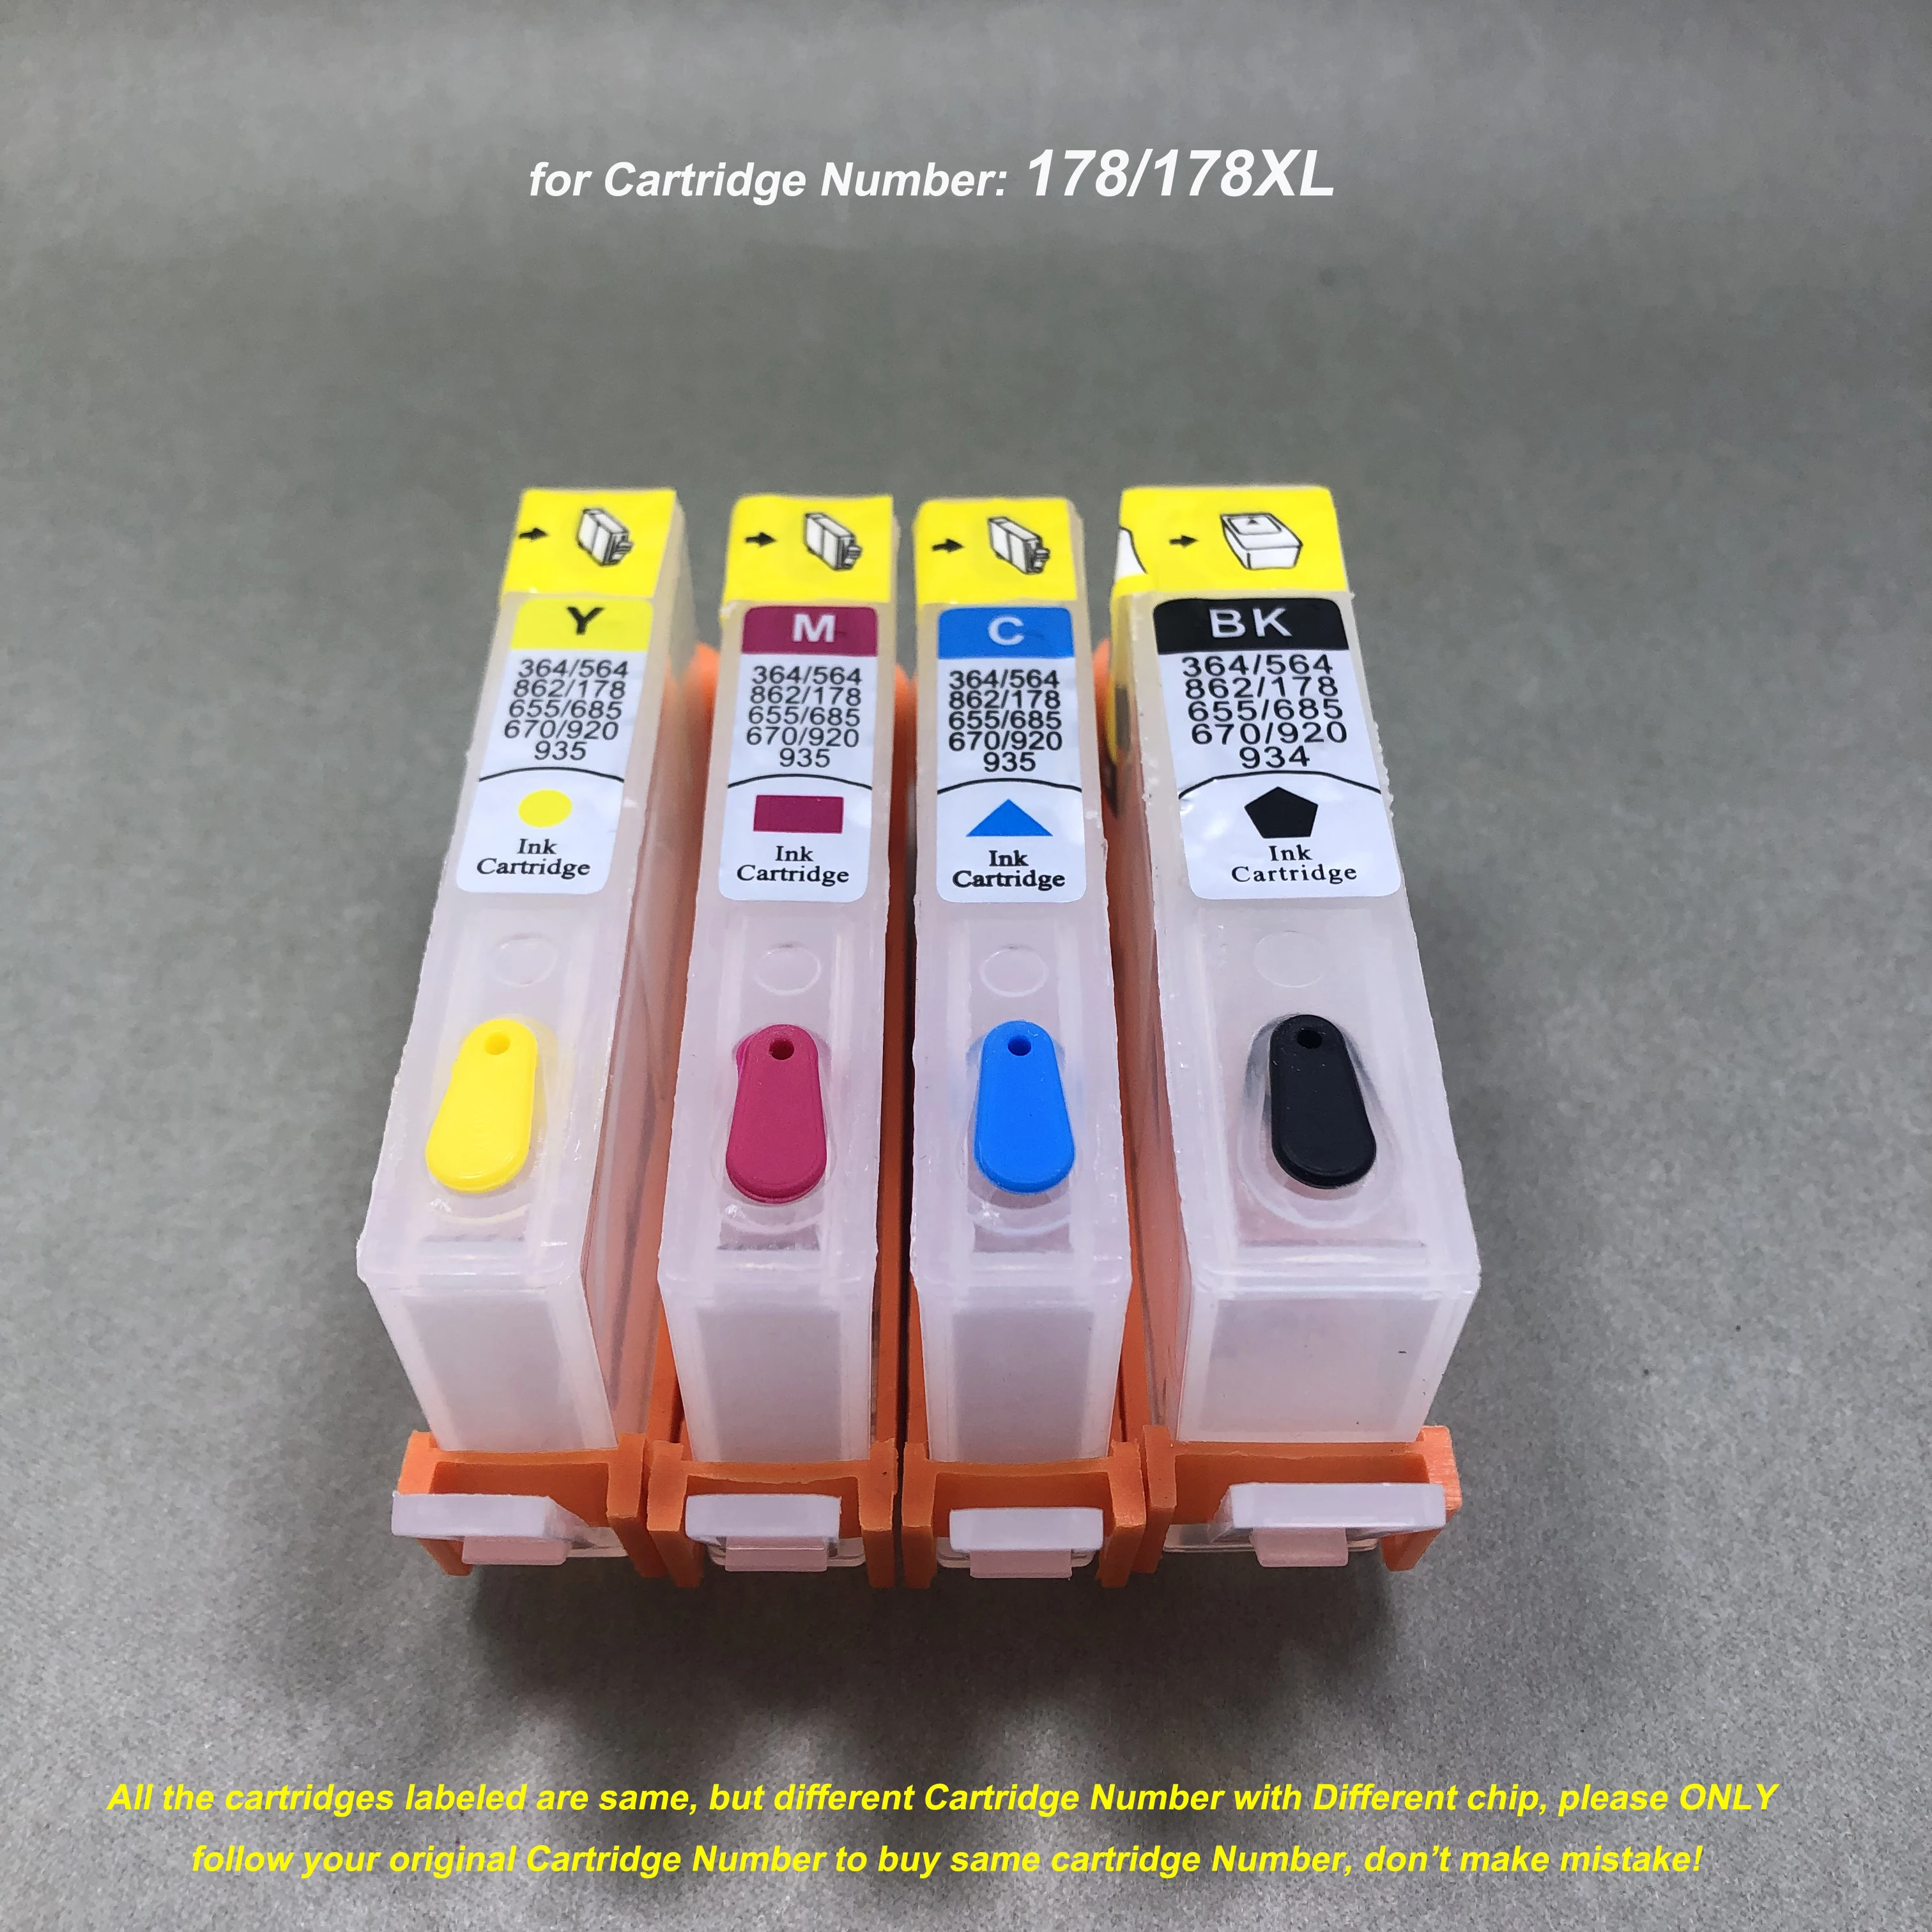 

178 178XL Empty Refillable Ink Cartridge with Chip for HP Photosmart C6380 C6300 C5300 C5383 C5380 C6383 D5460 D5400 D5463 D5468